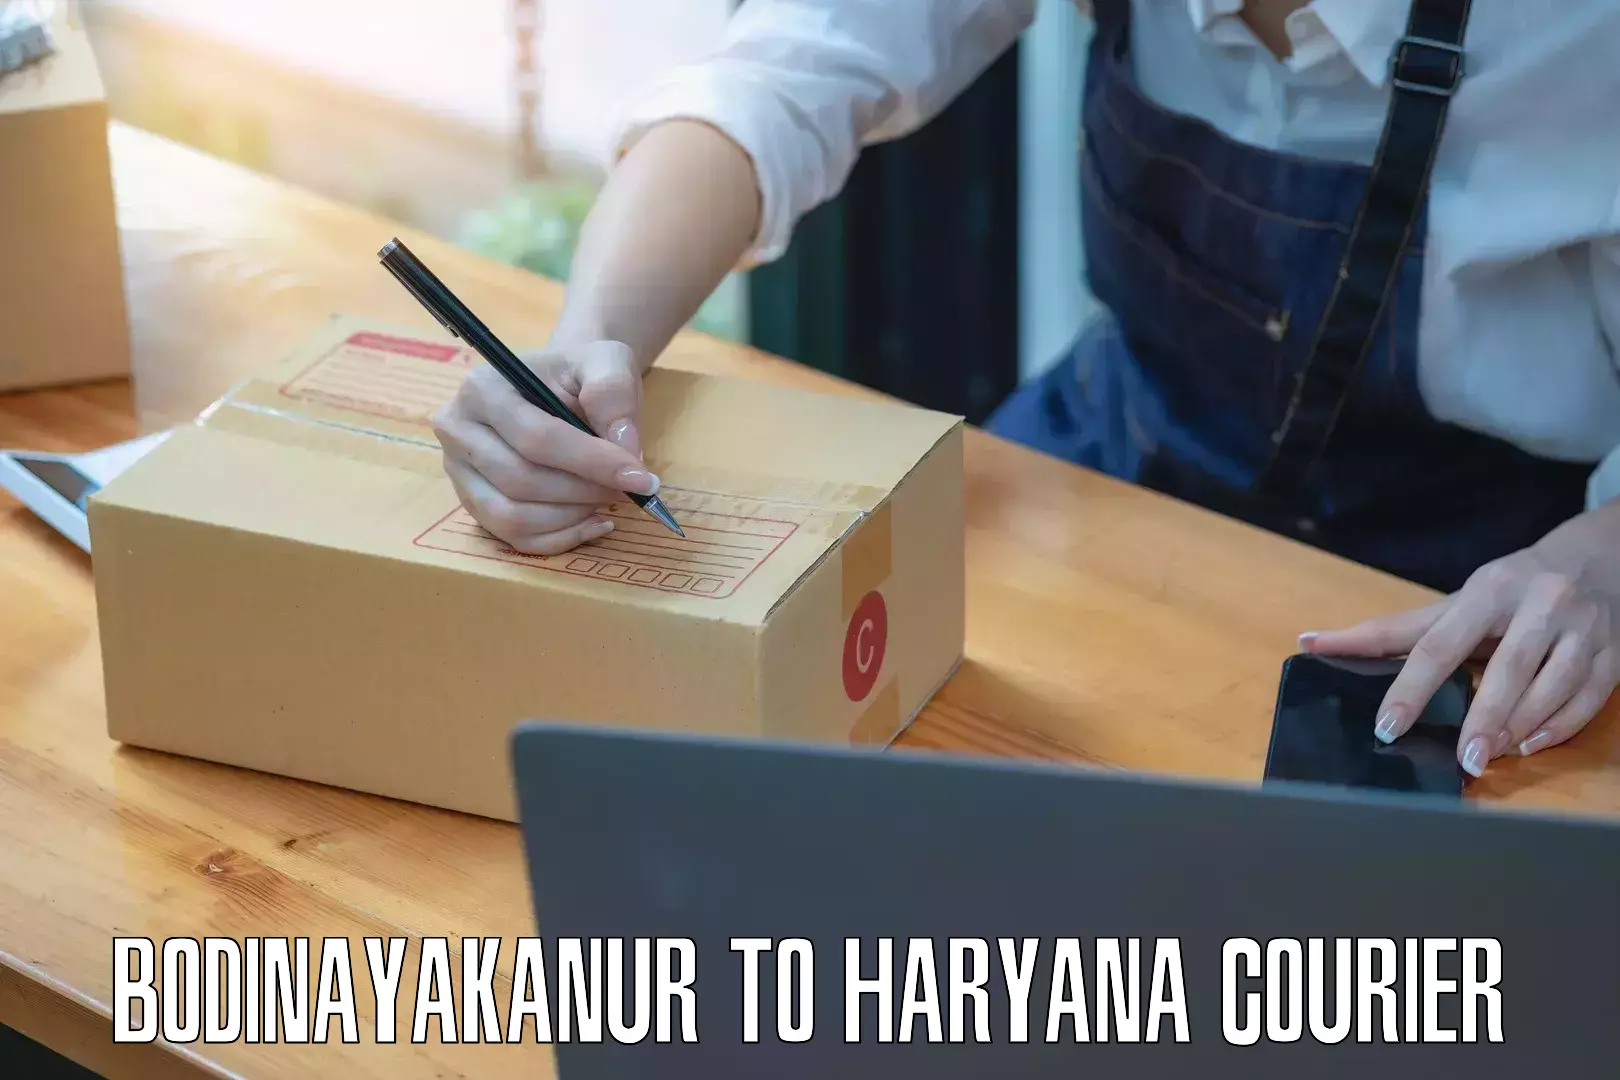 International courier rates Bodinayakanur to NCR Haryana